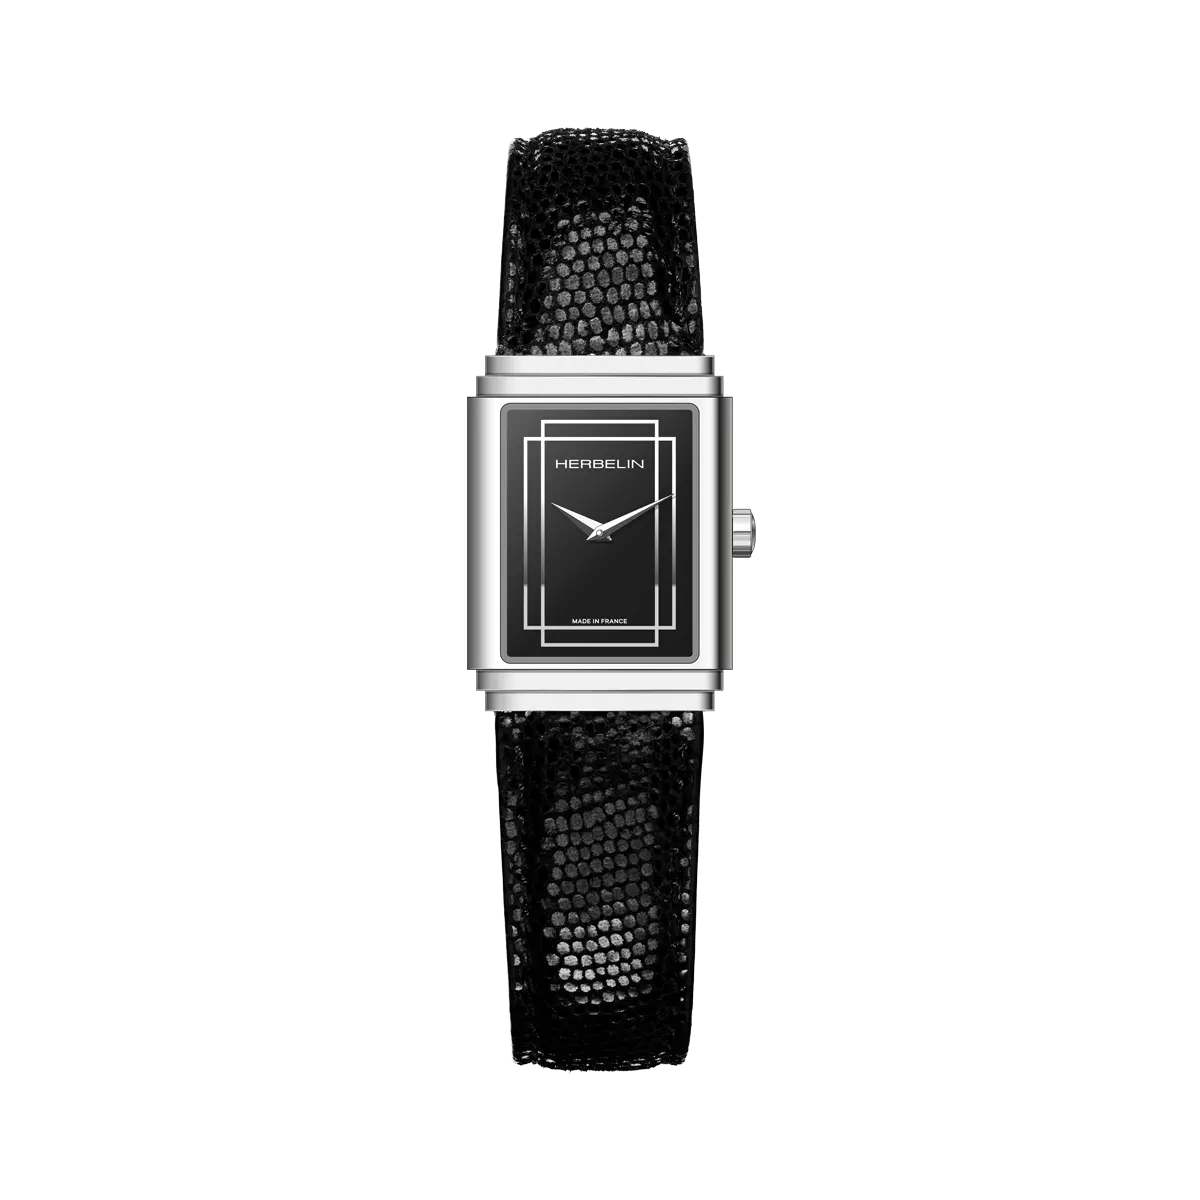 Michel Herbelin Art Deco 1925 Steel Watch with Black Leather Strap